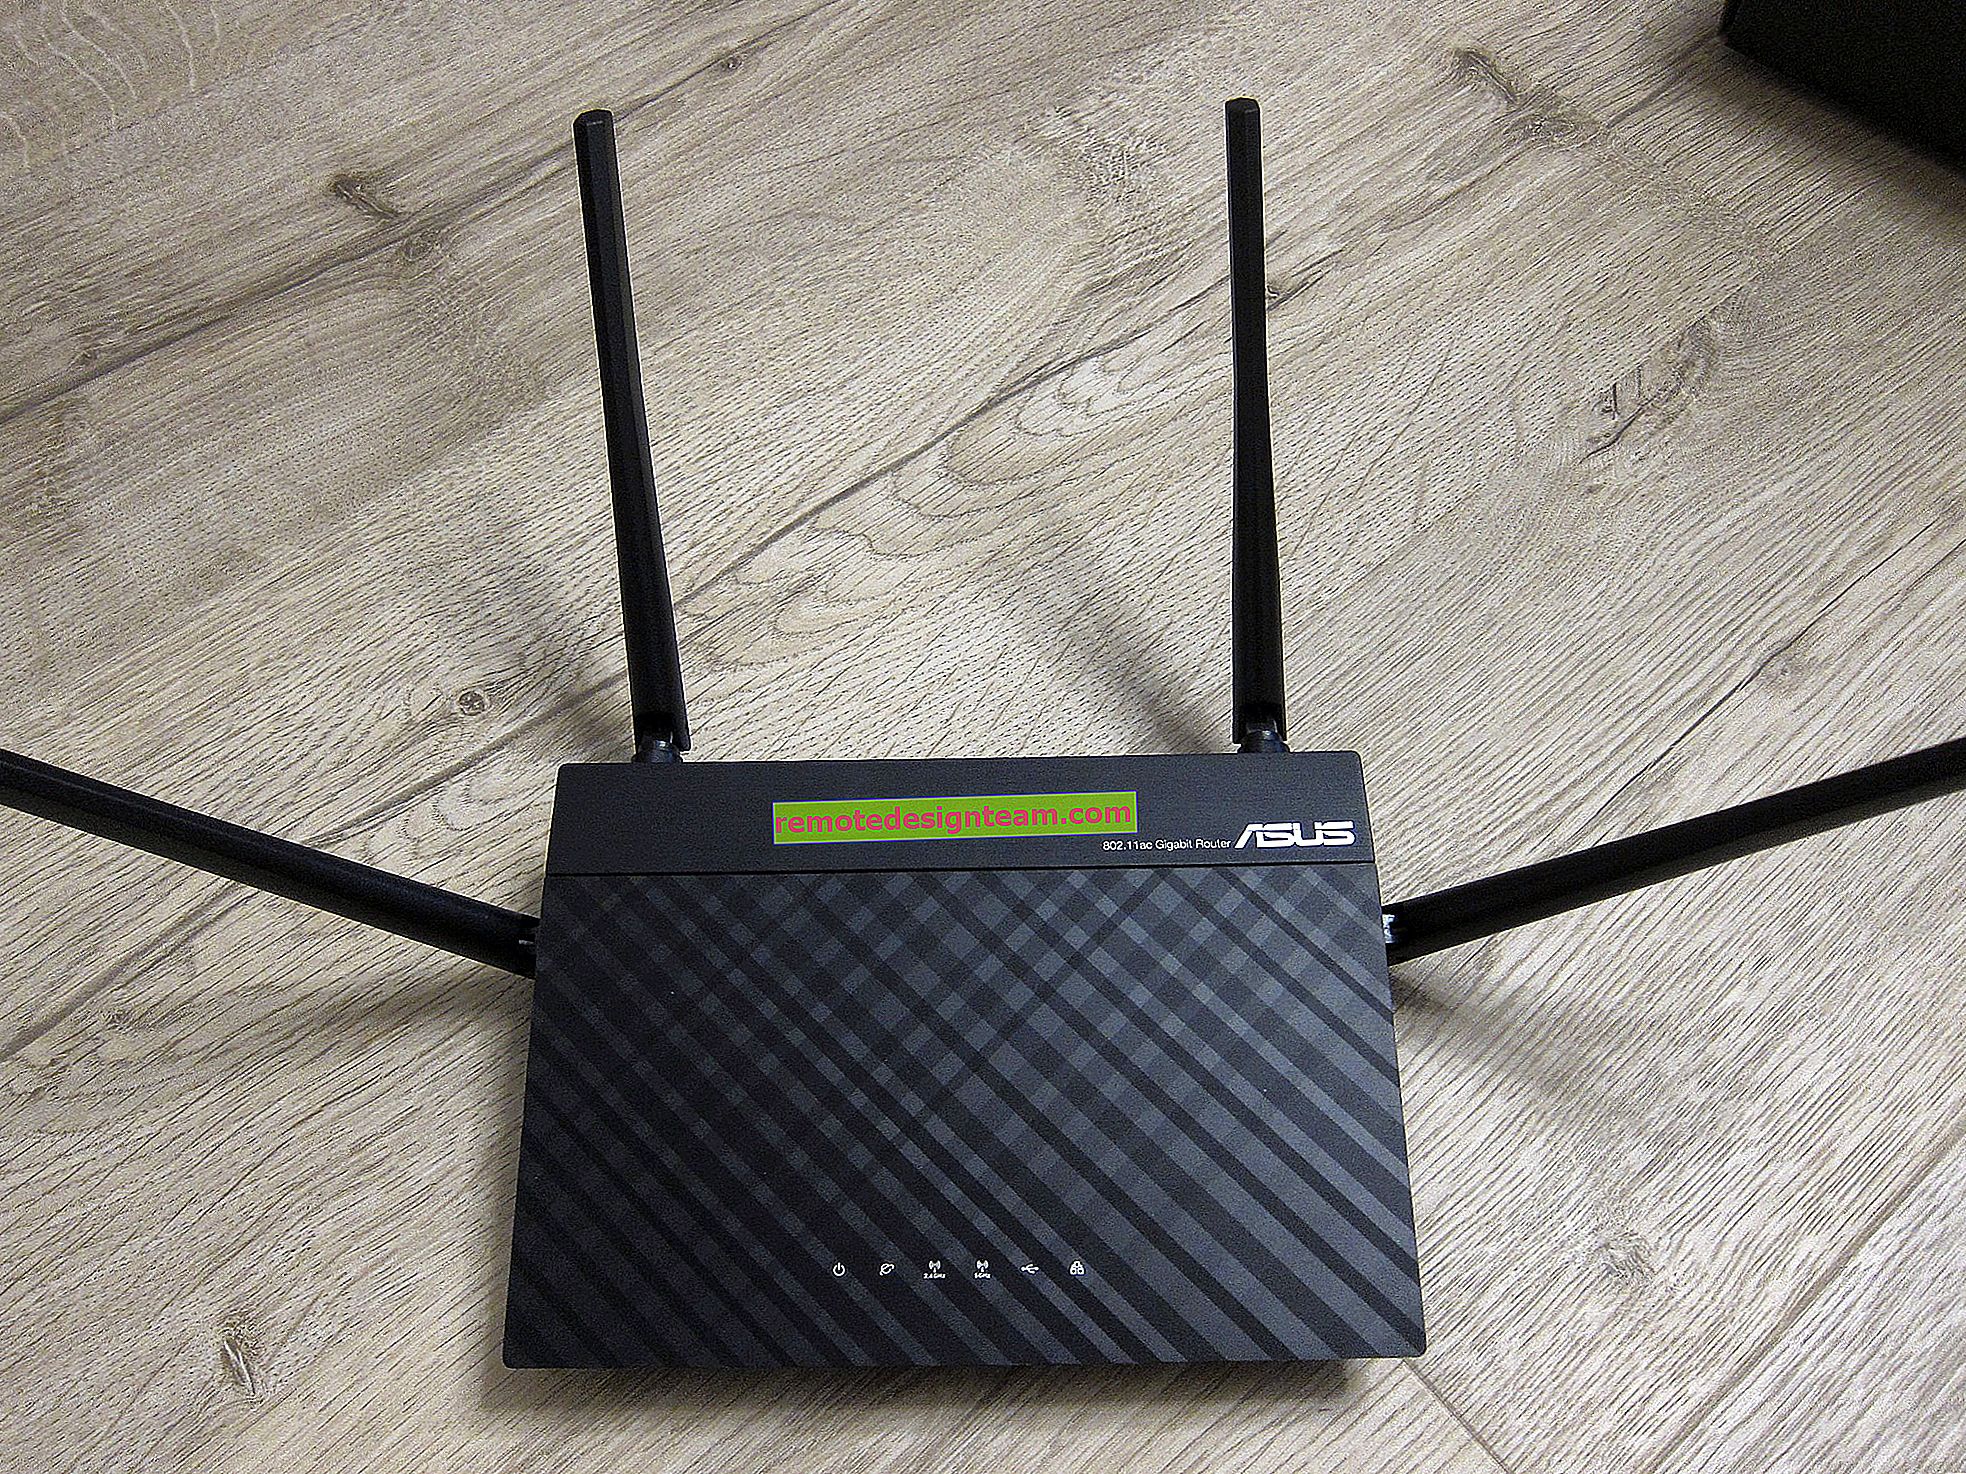 802.11ac - новий стандарт Wi-Fi